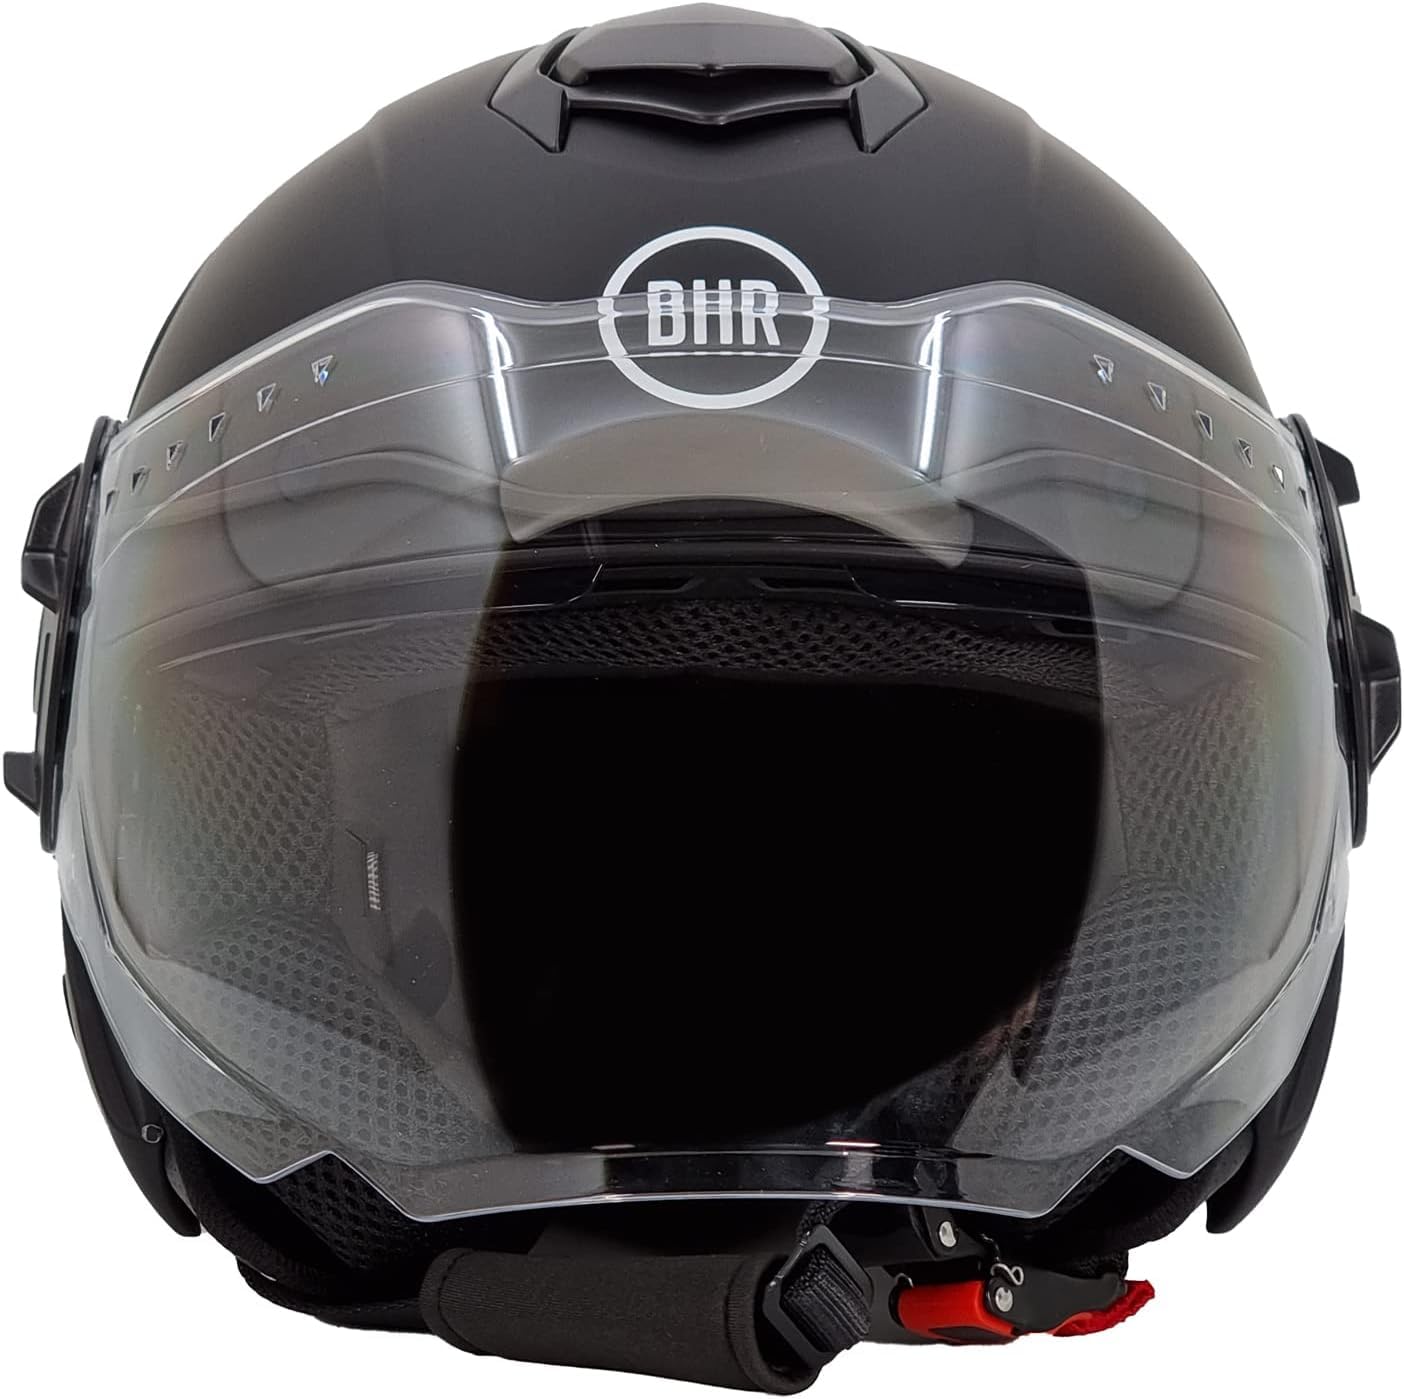 BHR Jet Helm Double Visor 830 Flash, Scooter Helm mit ECE 22.06 Zulassung, Leichter & komfortabler Jet Helm mit innenliegender Sonnenblende, Mattschwarz, XL